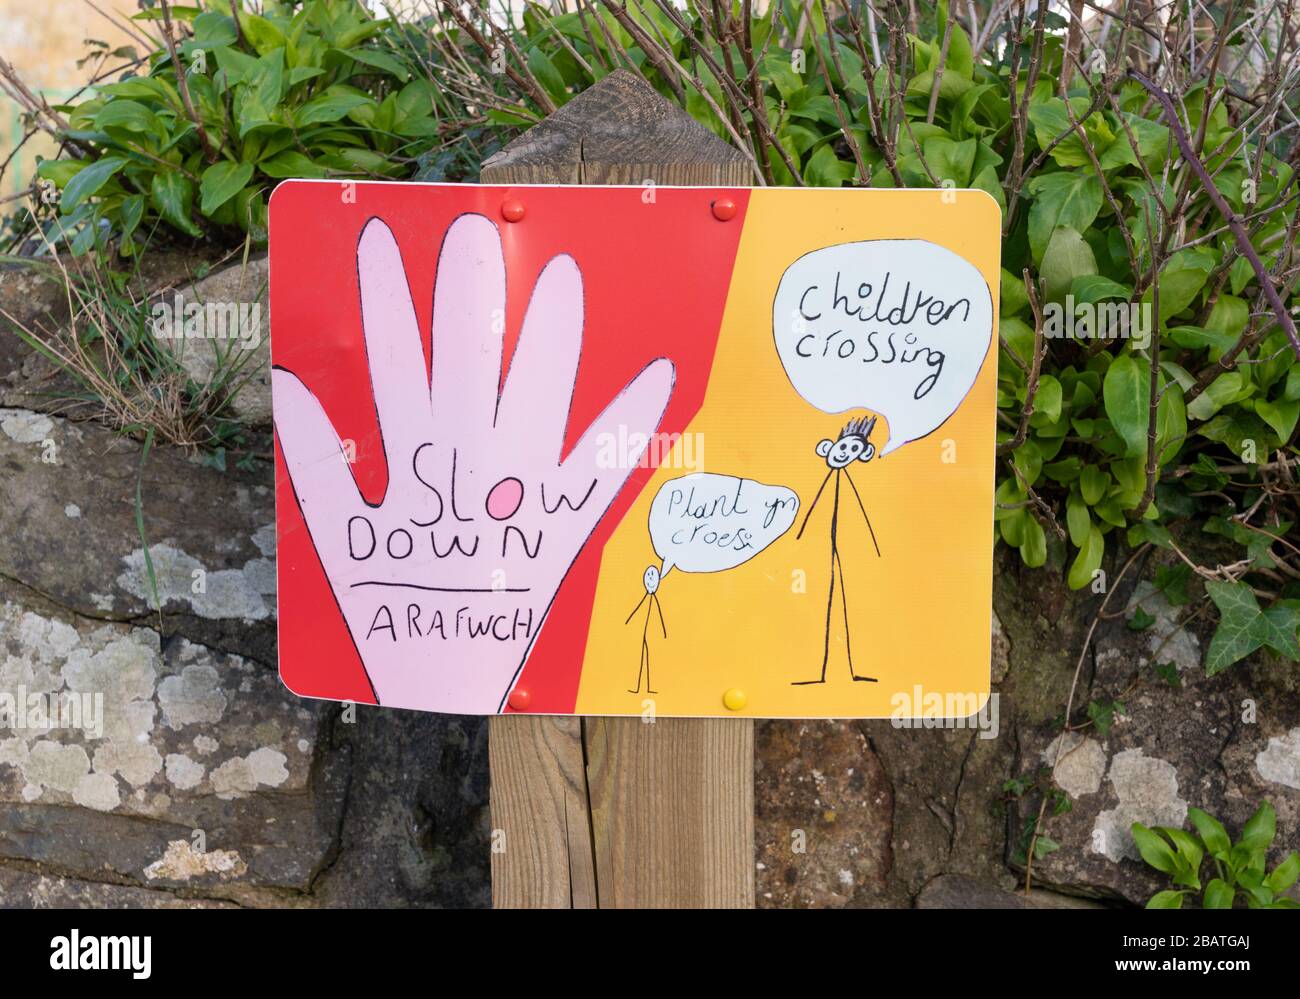 Un panneau dessiné à la main à l'extérieur d'une école conseillant en anglais et en gallois de ralentir avec les enfants traversant. Newport, Pembrokeshire. Pays de Galles. ROYAUME-UNI Banque D'Images